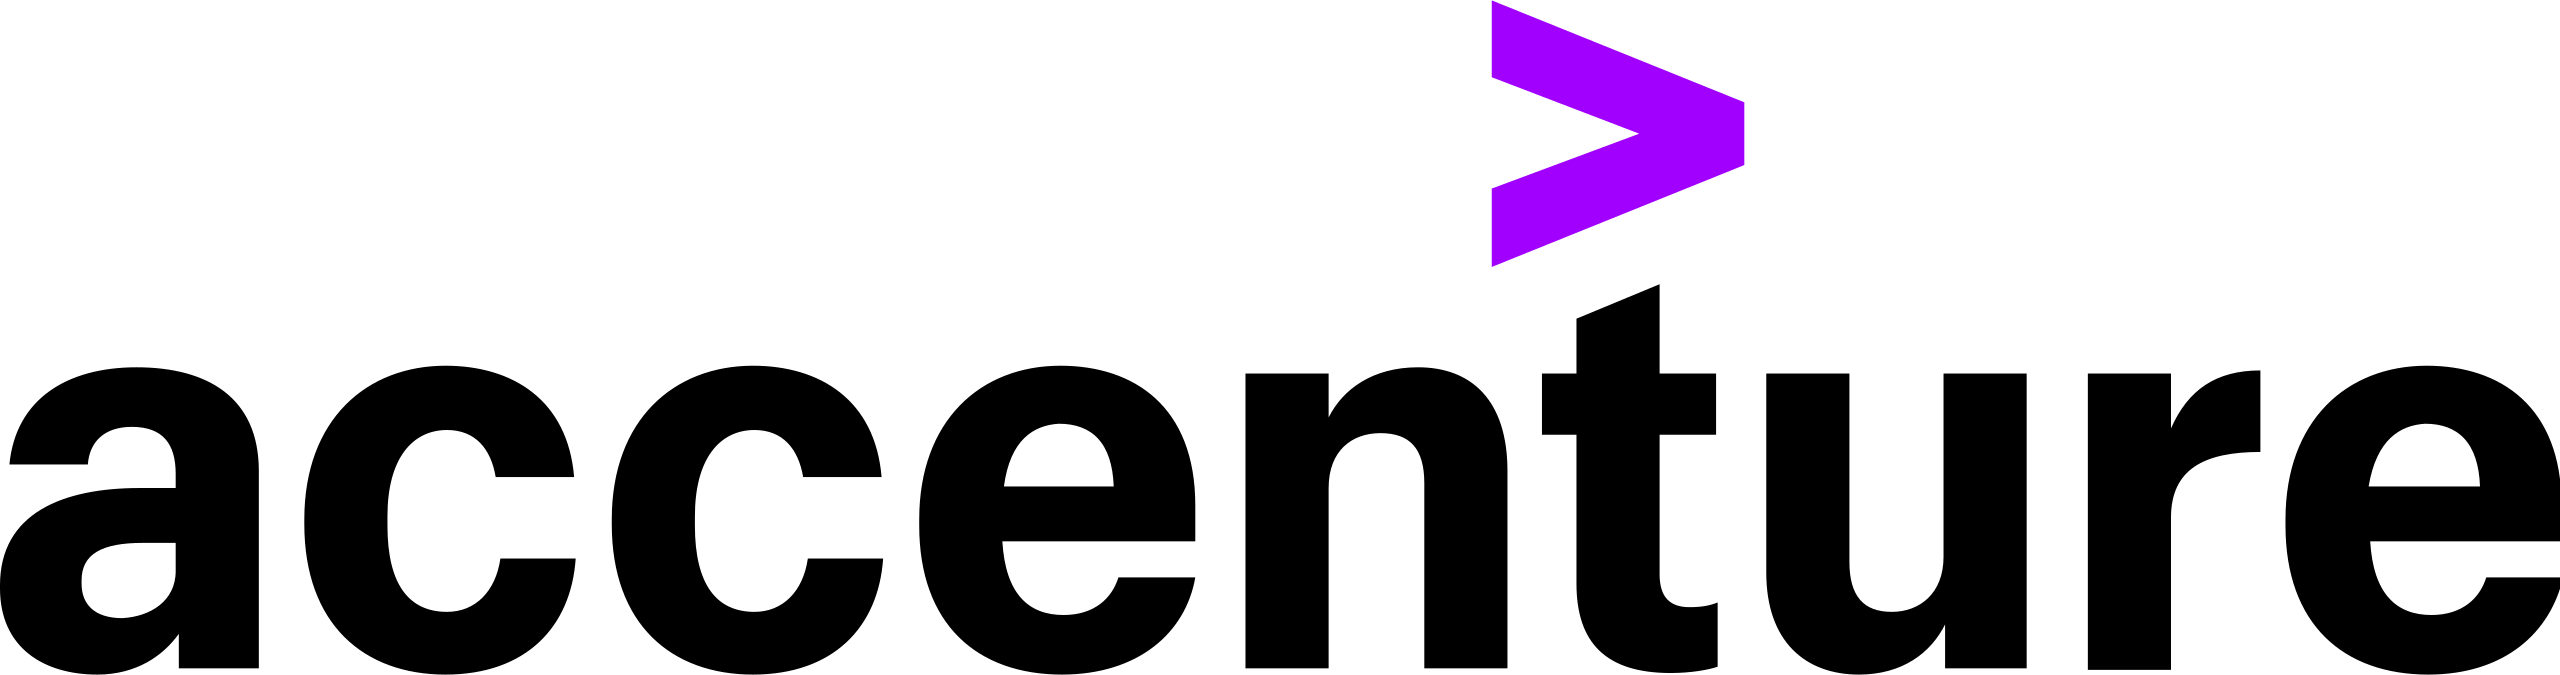 Logo di Accenture